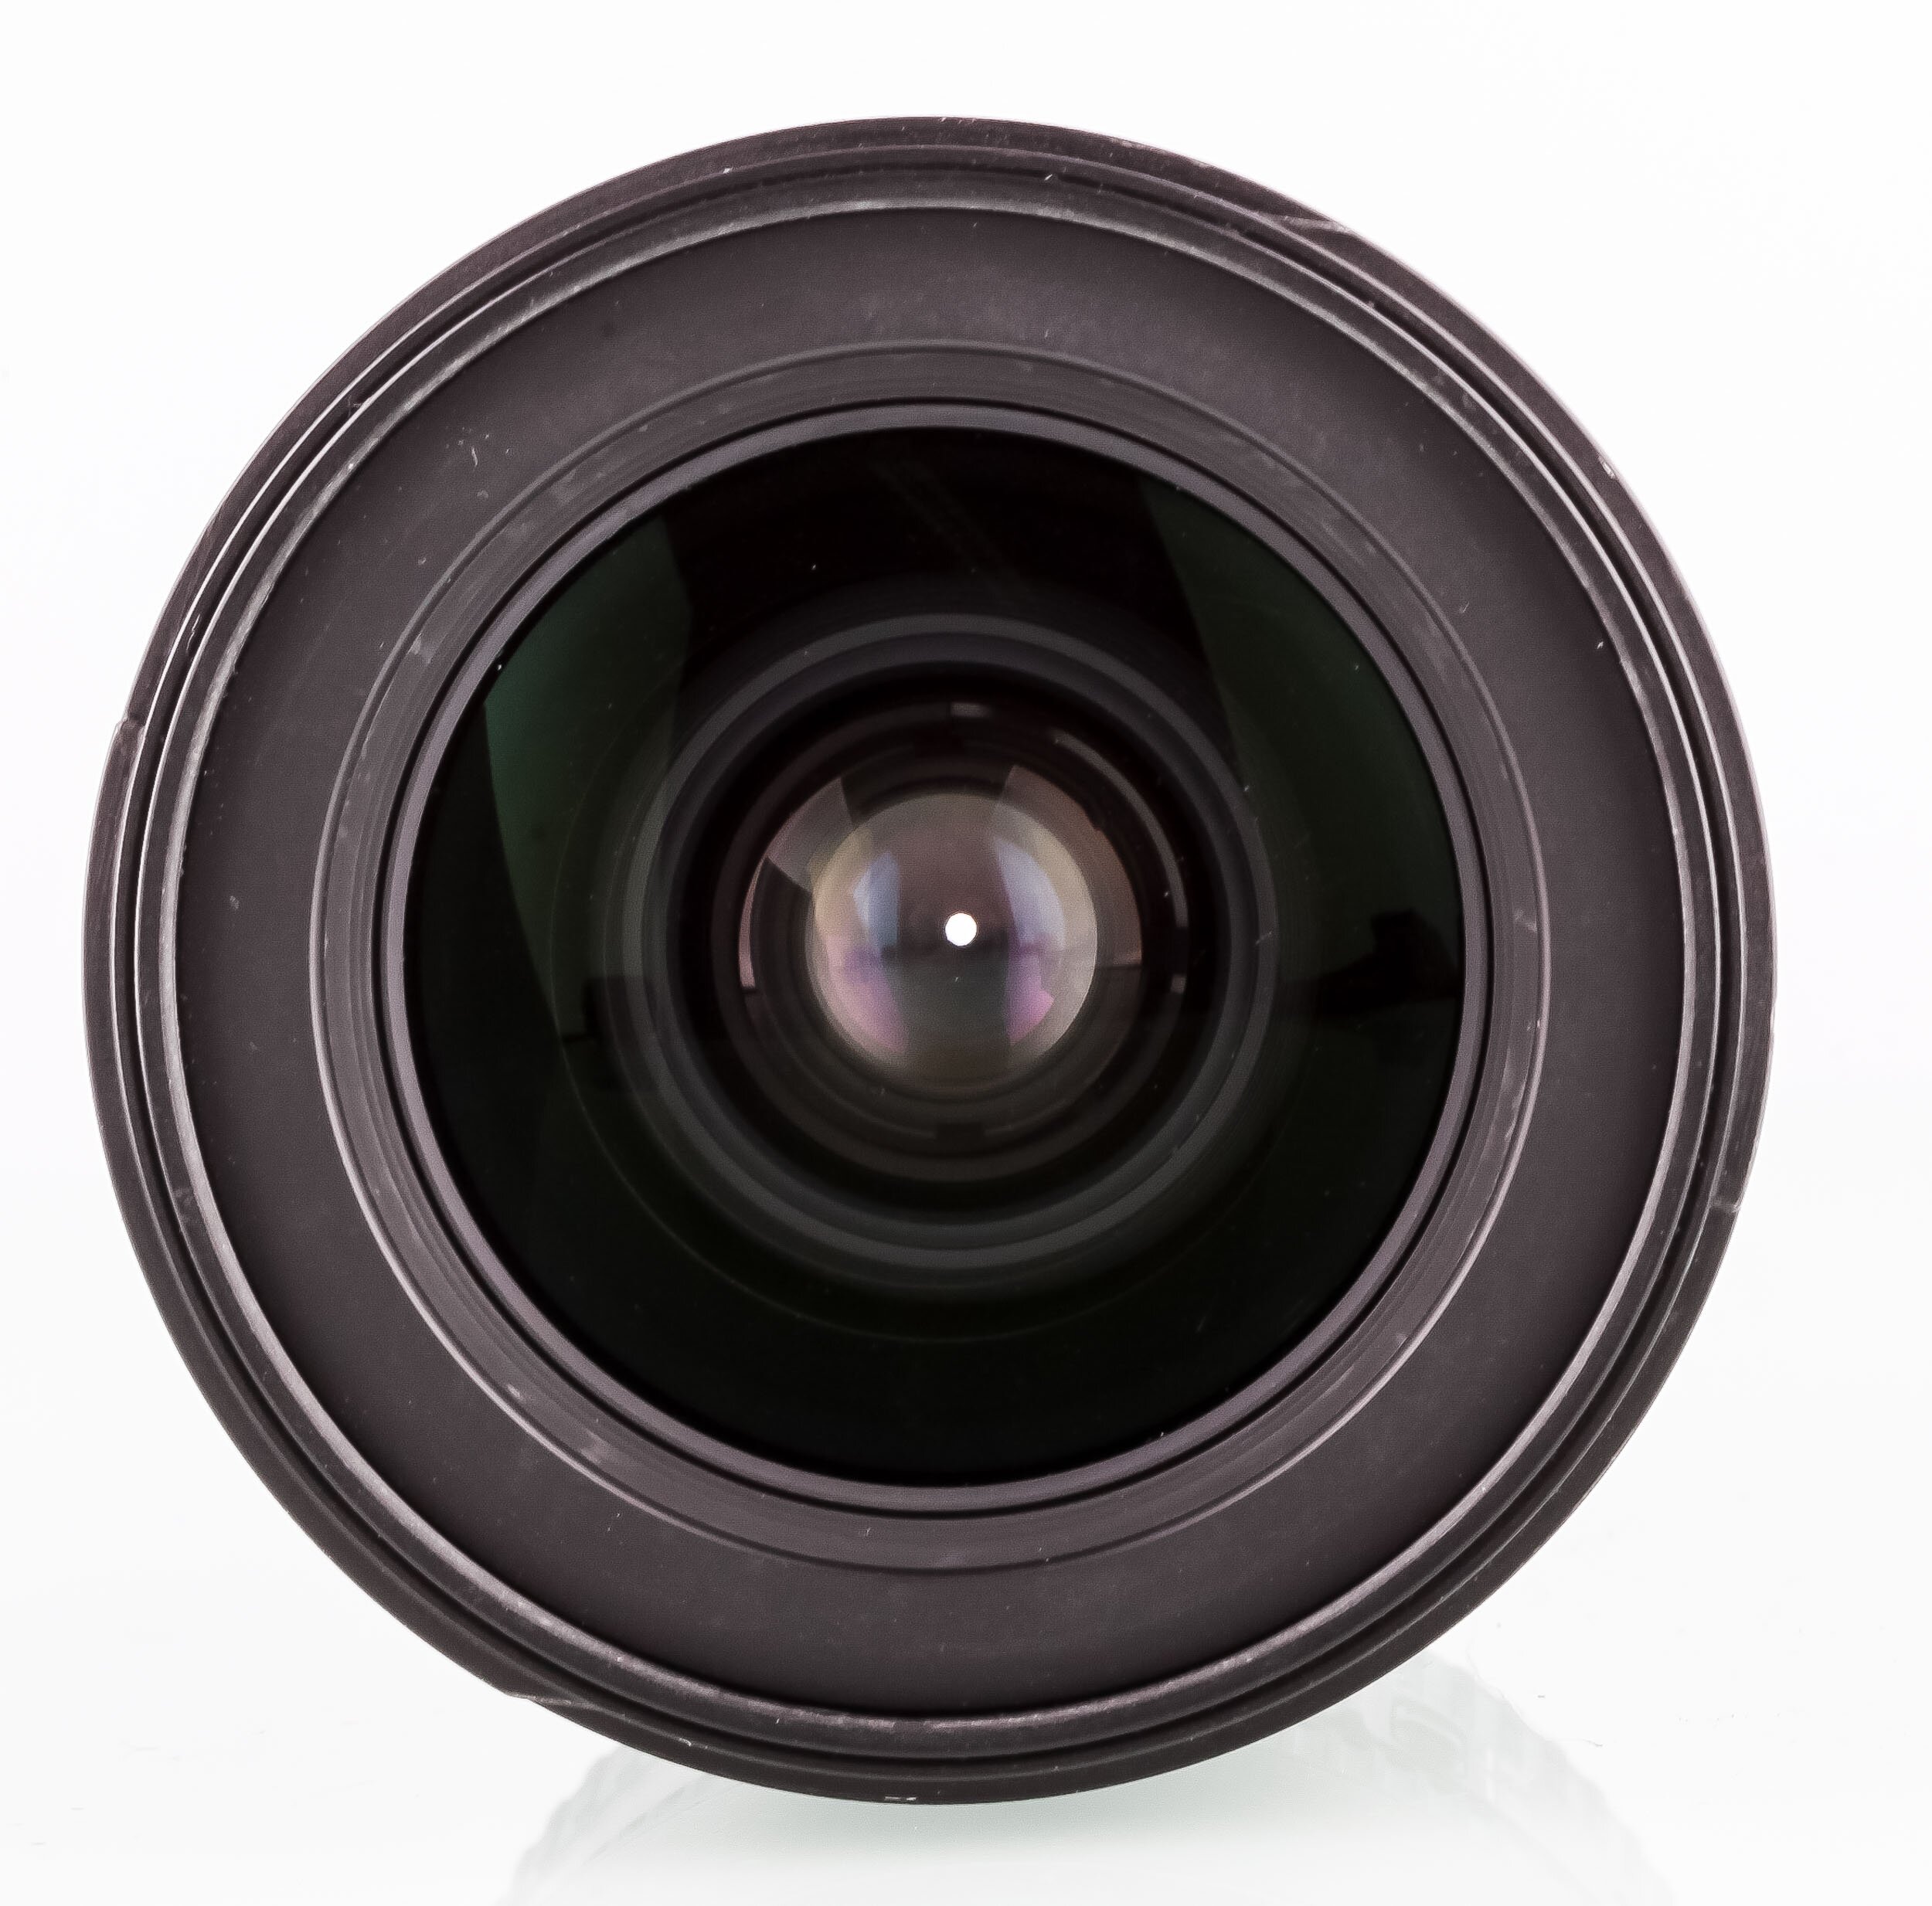 Nikon AF-S Nikkor 17-55mm 2,8 G ED DX